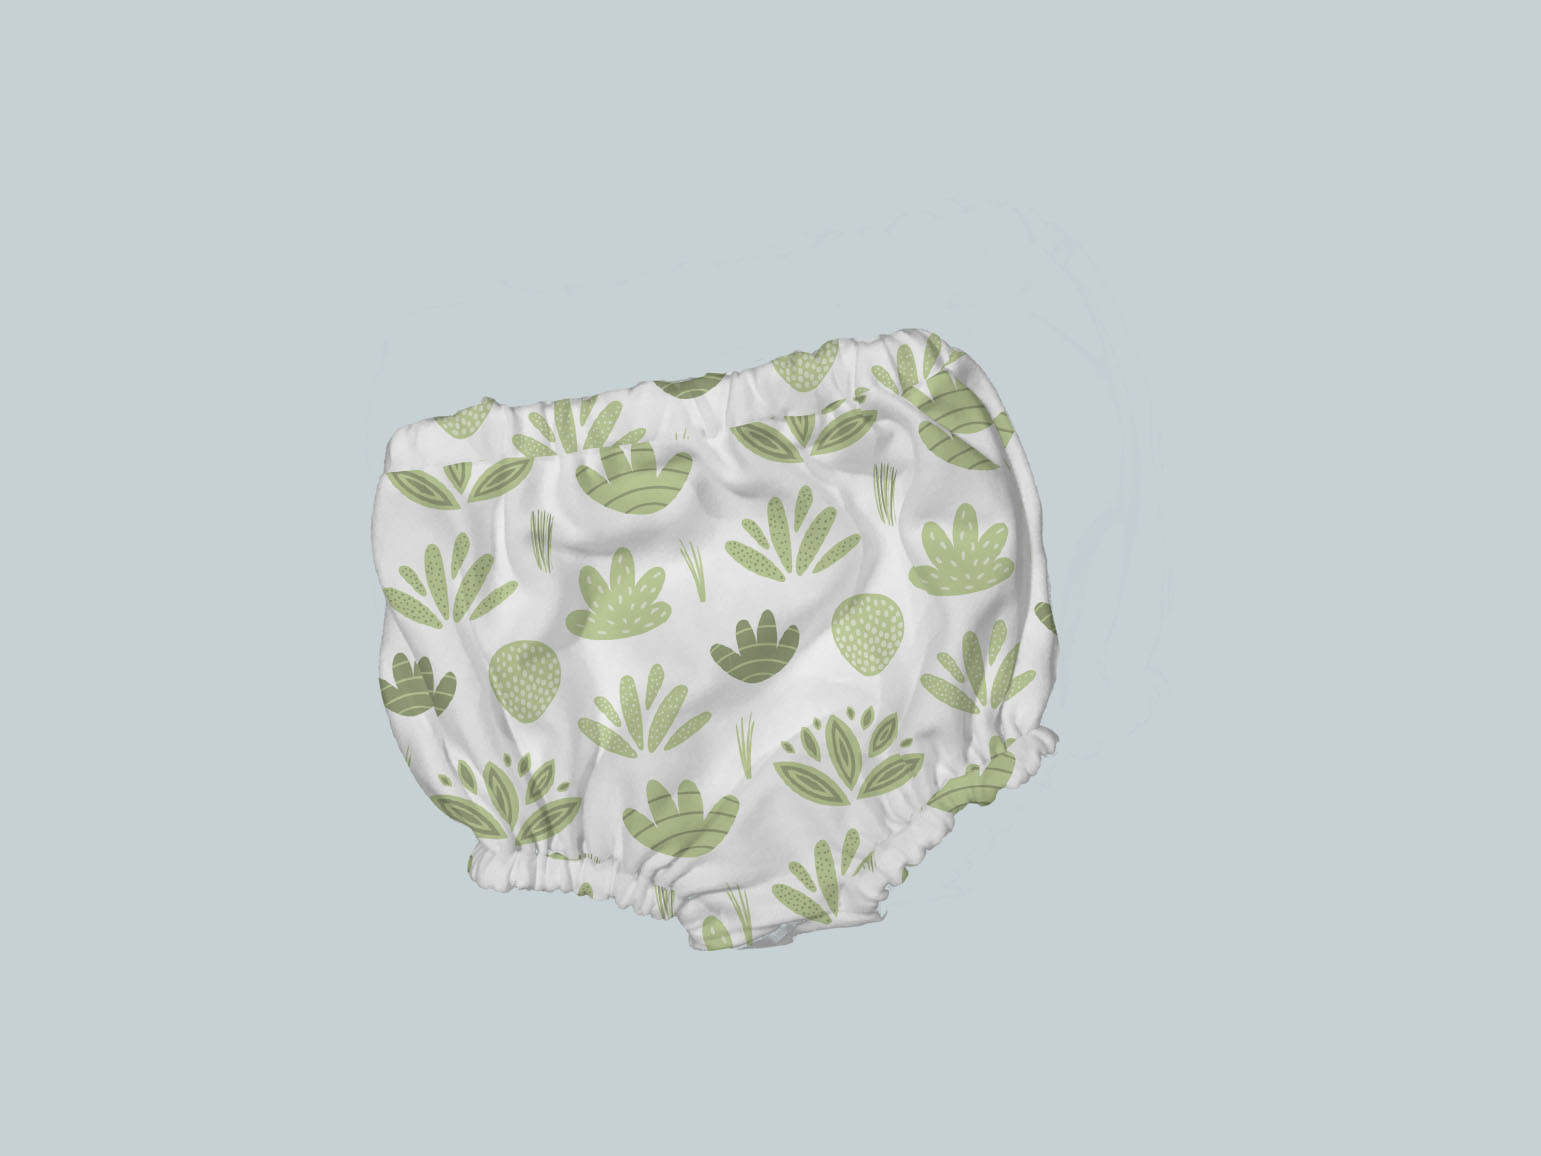 Bummies/Diaper Cover - Go Green